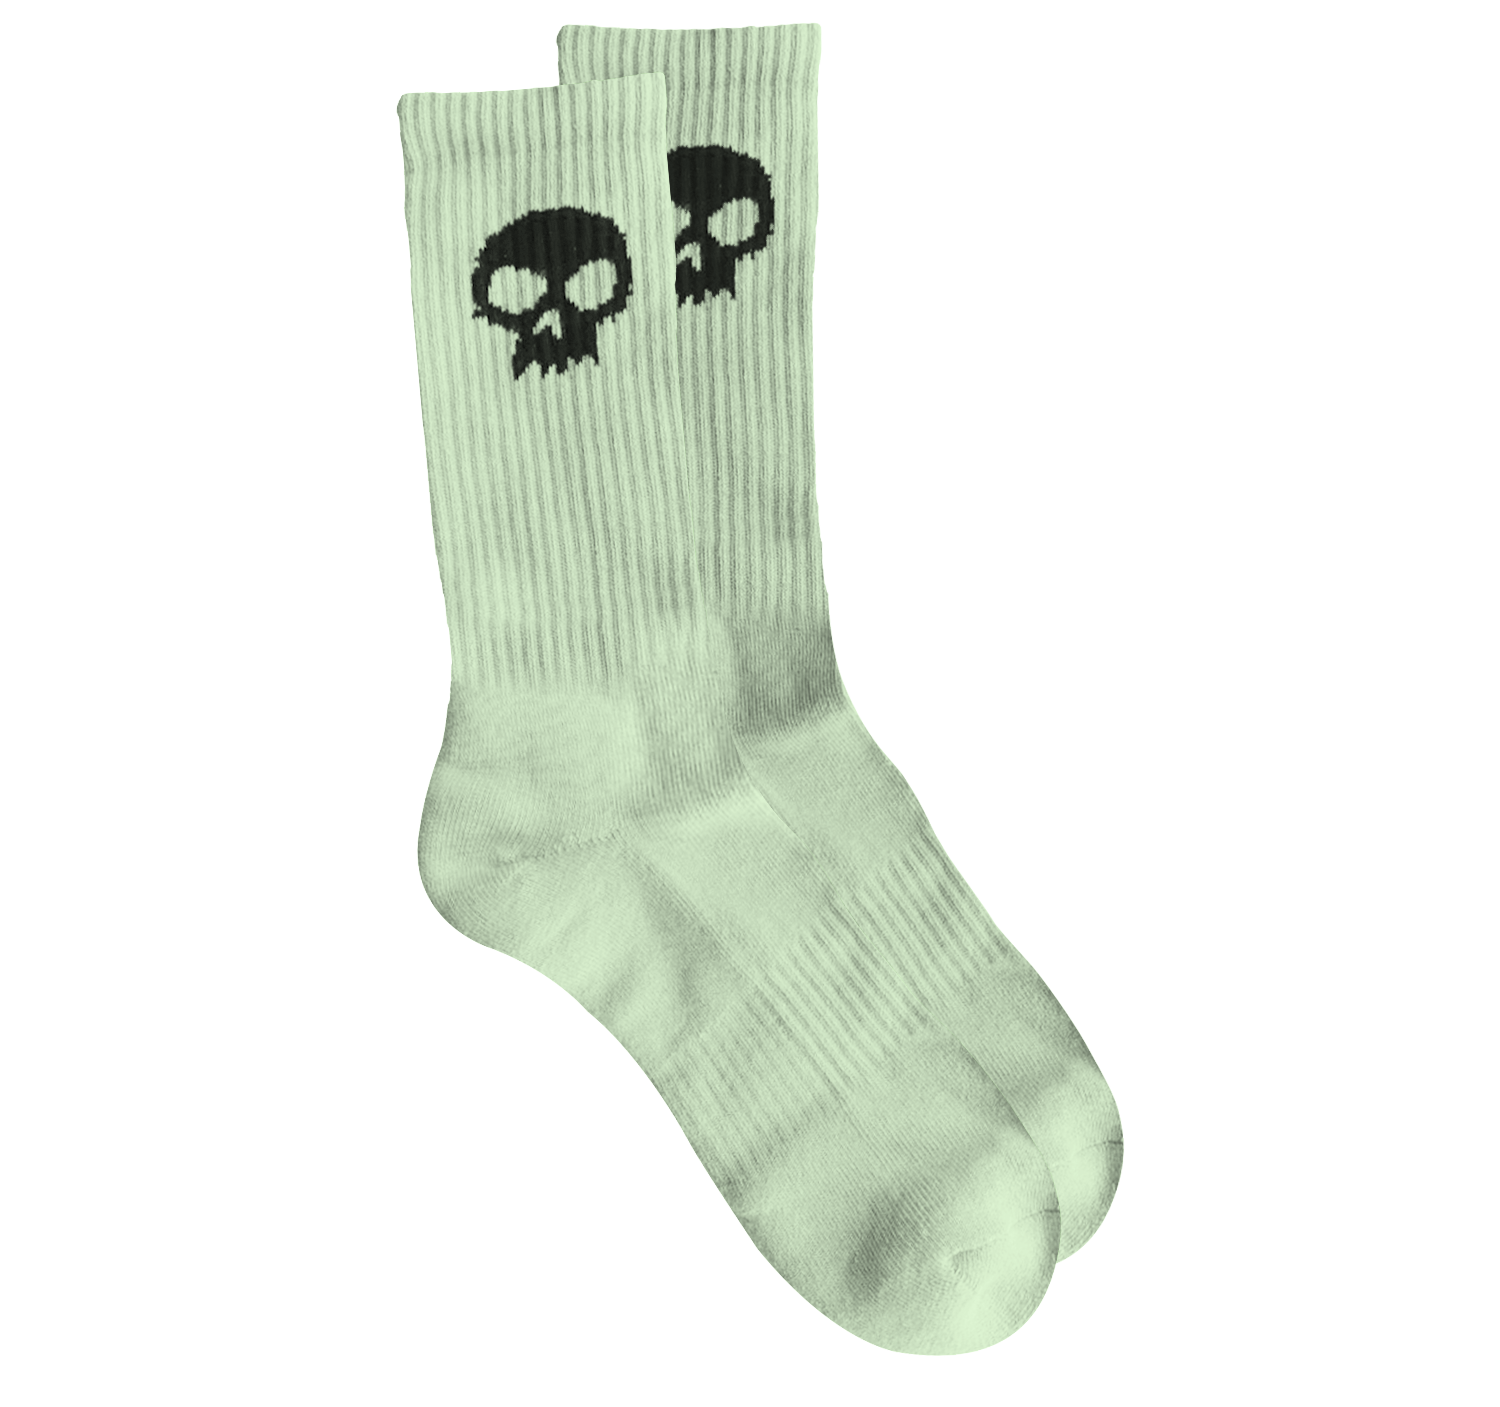 Grapple or Die Neon Skull Socks